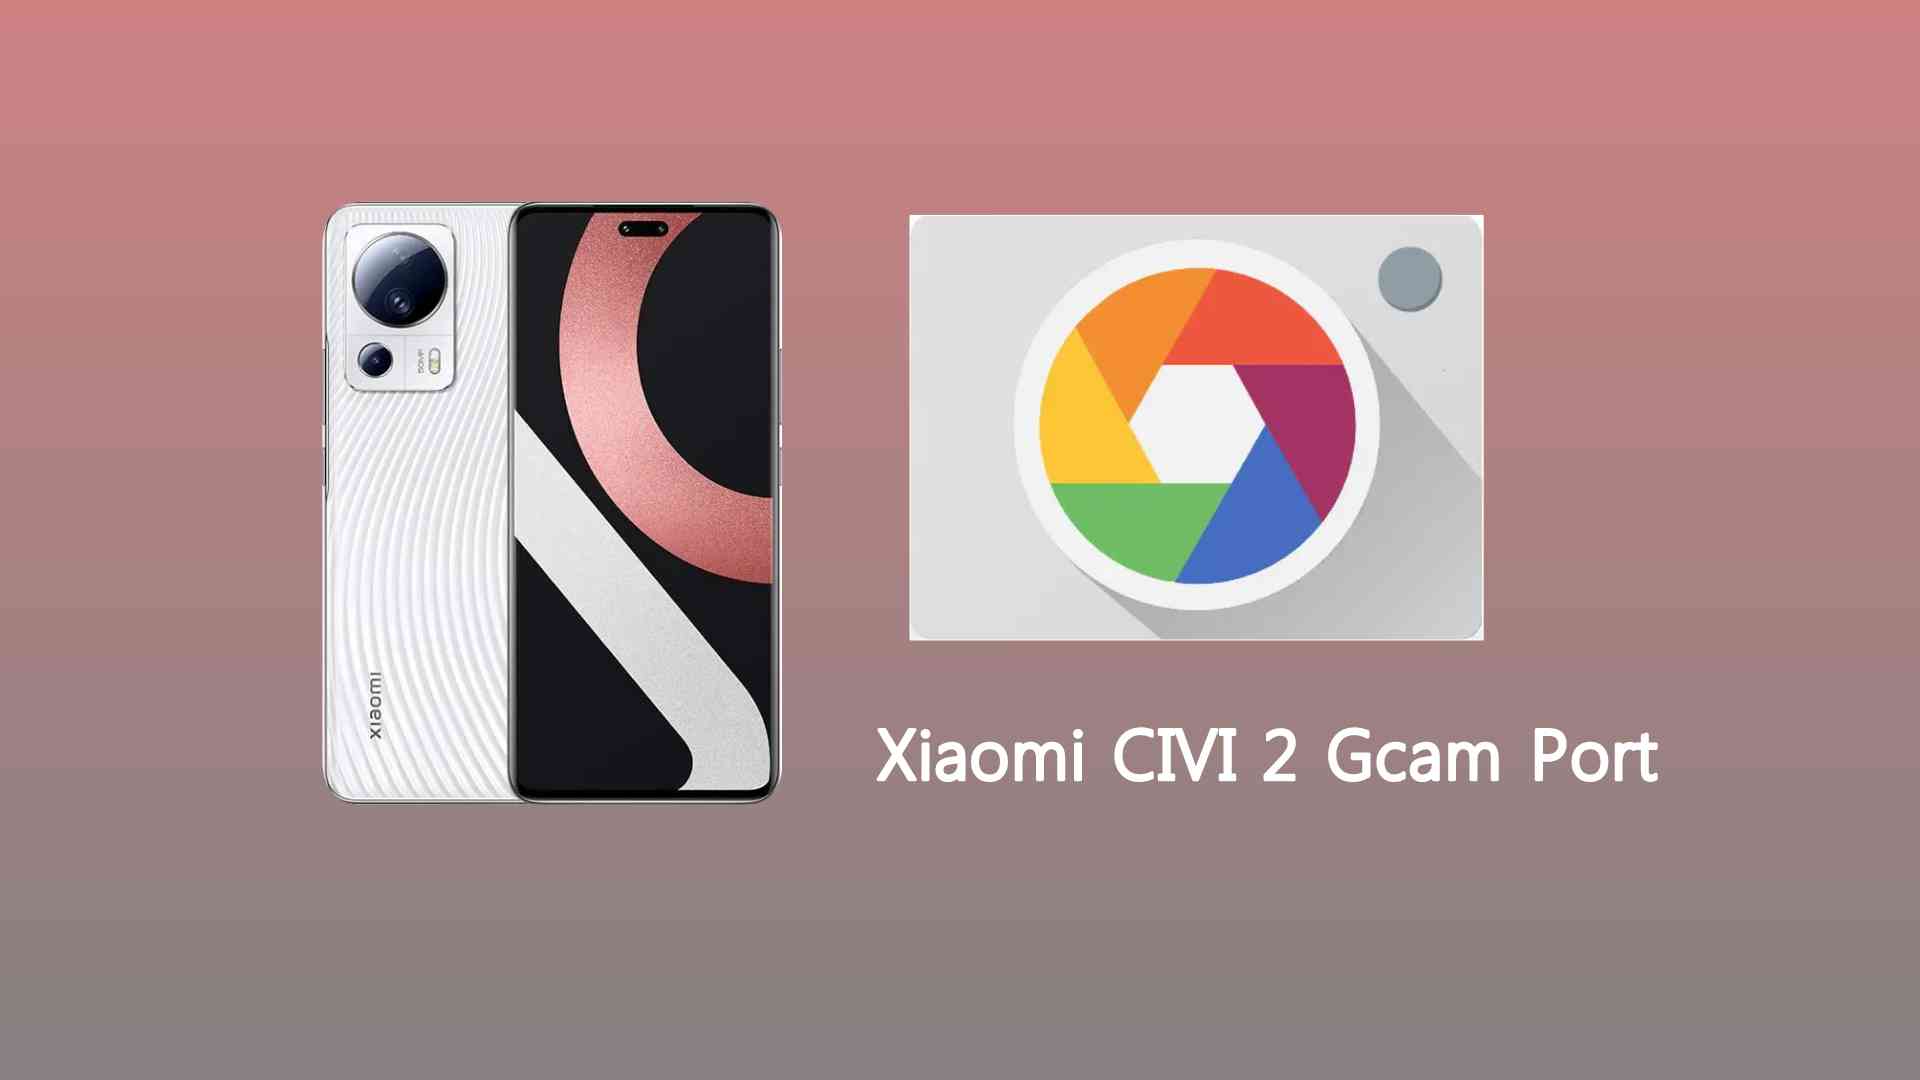 Xiaomi CIVI 2 Gcam Port